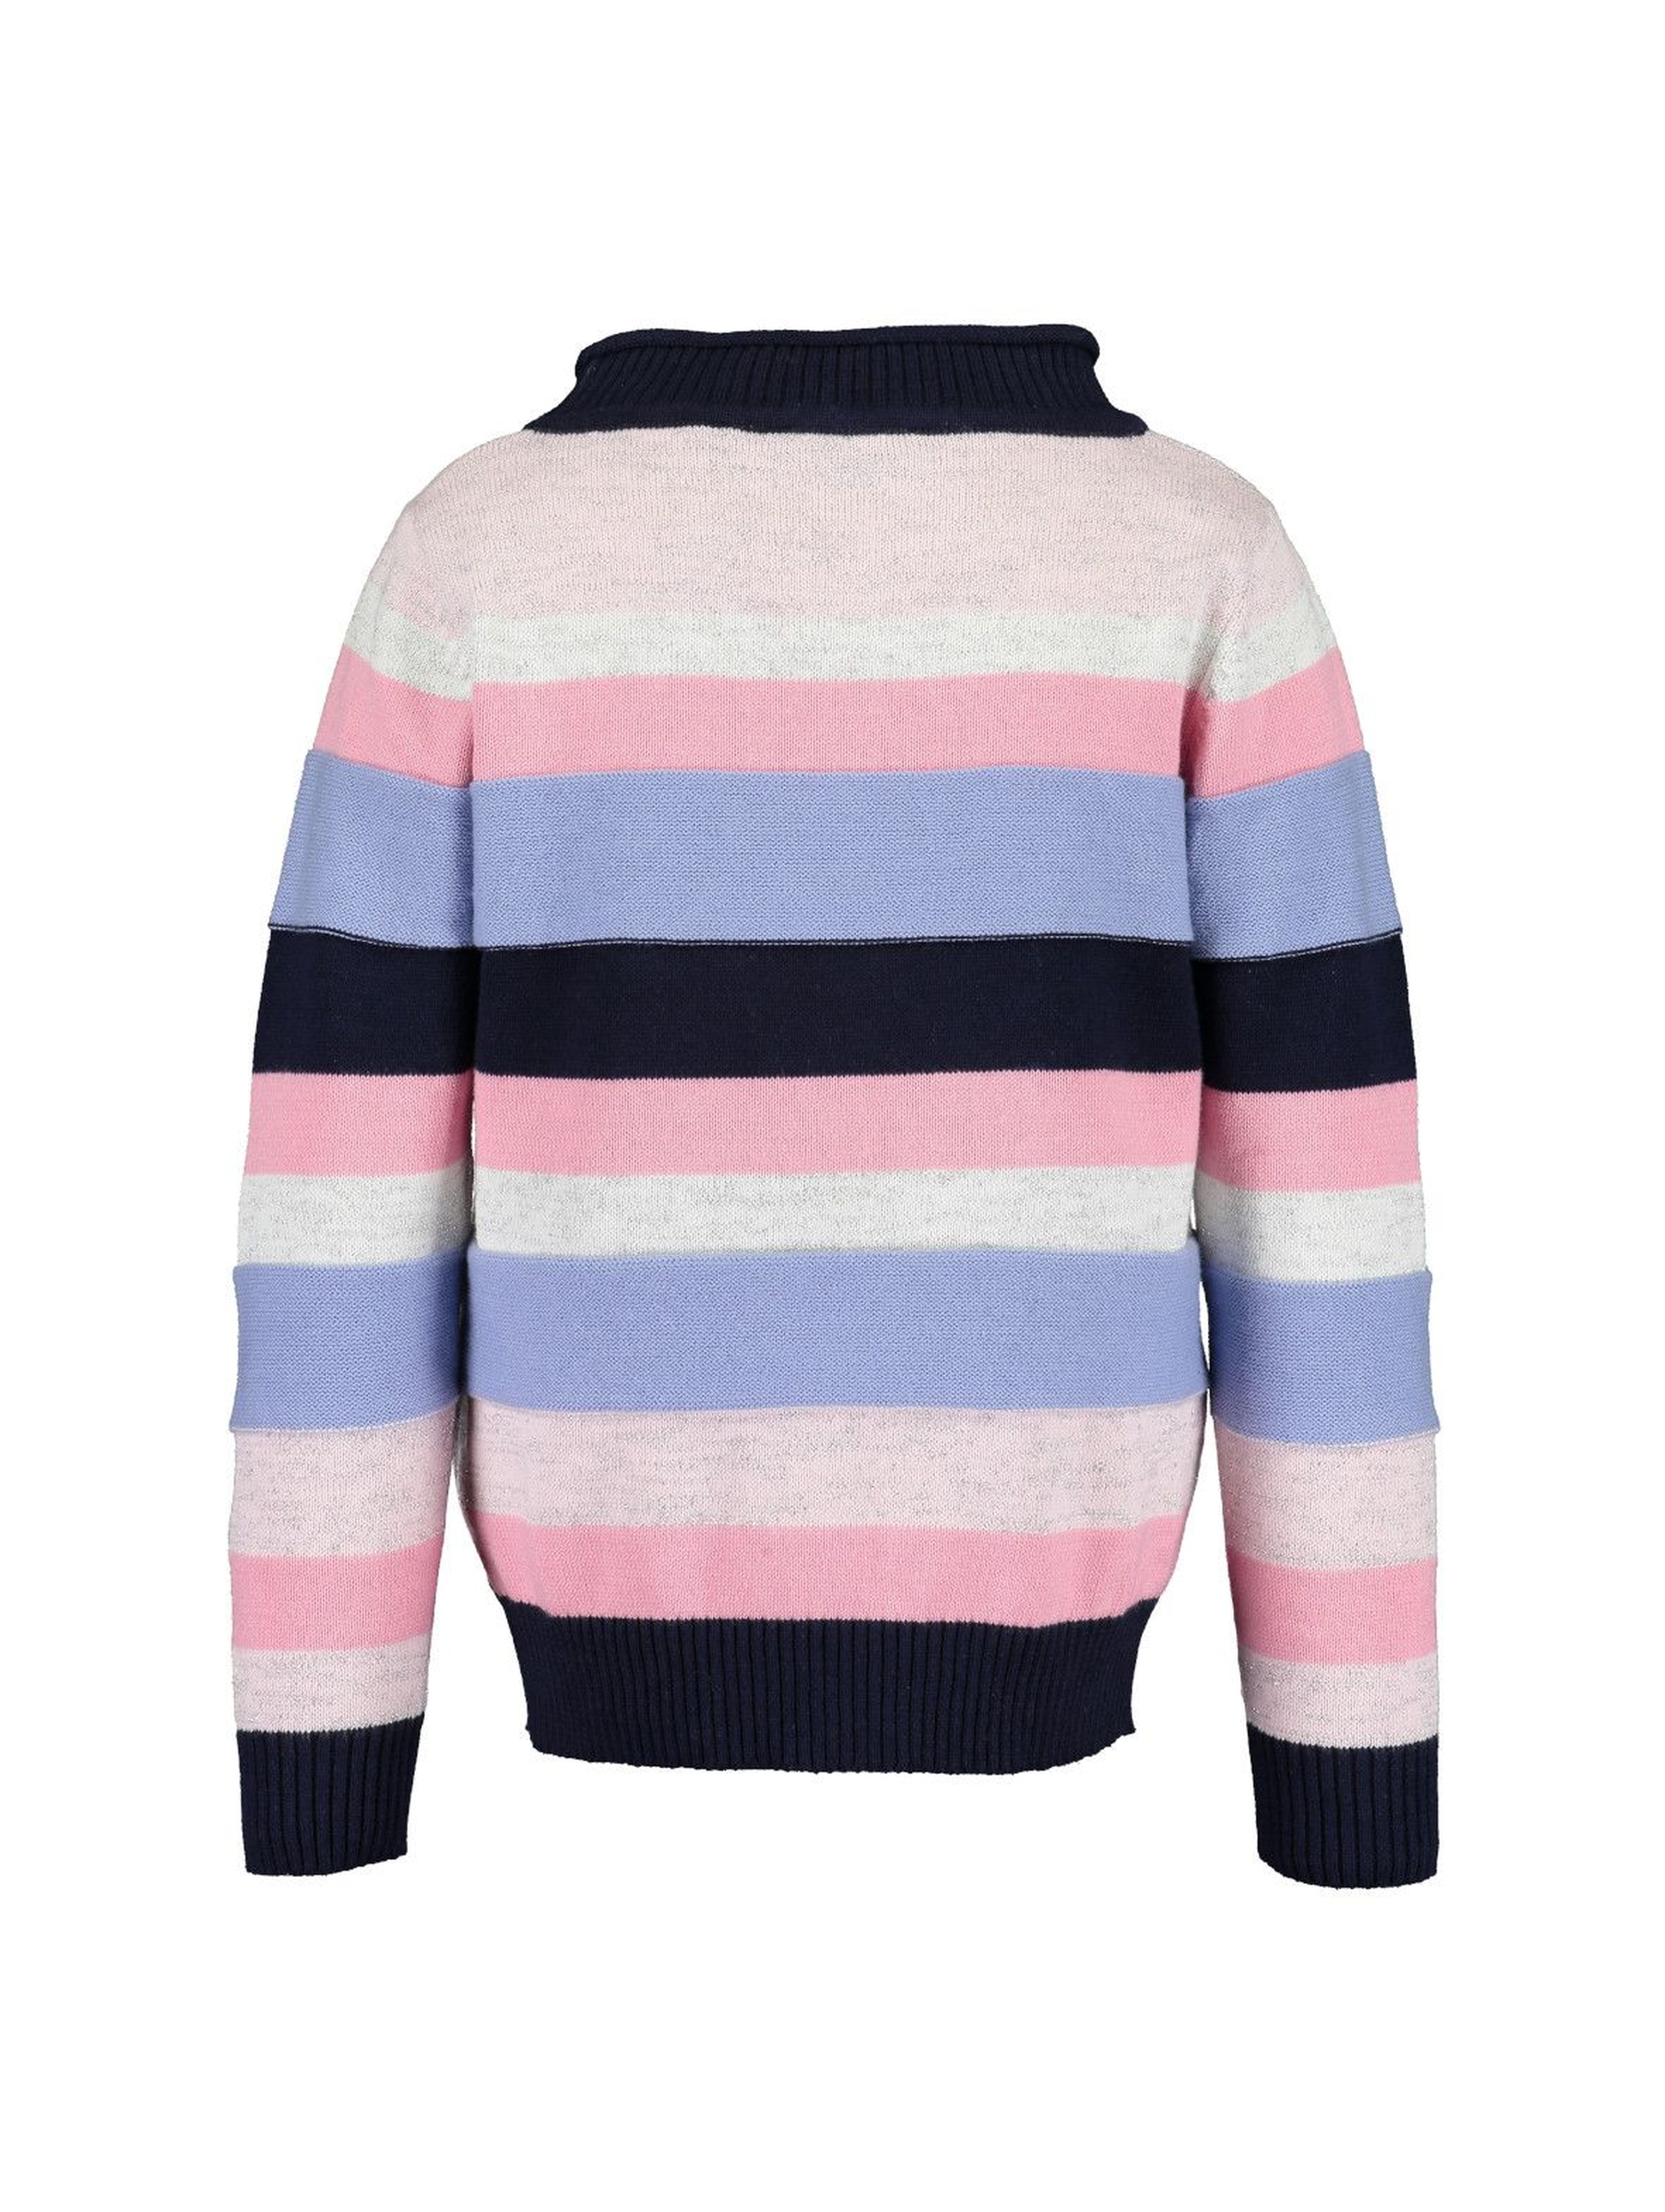 Kolorowy sweter dziewczęcy w paski